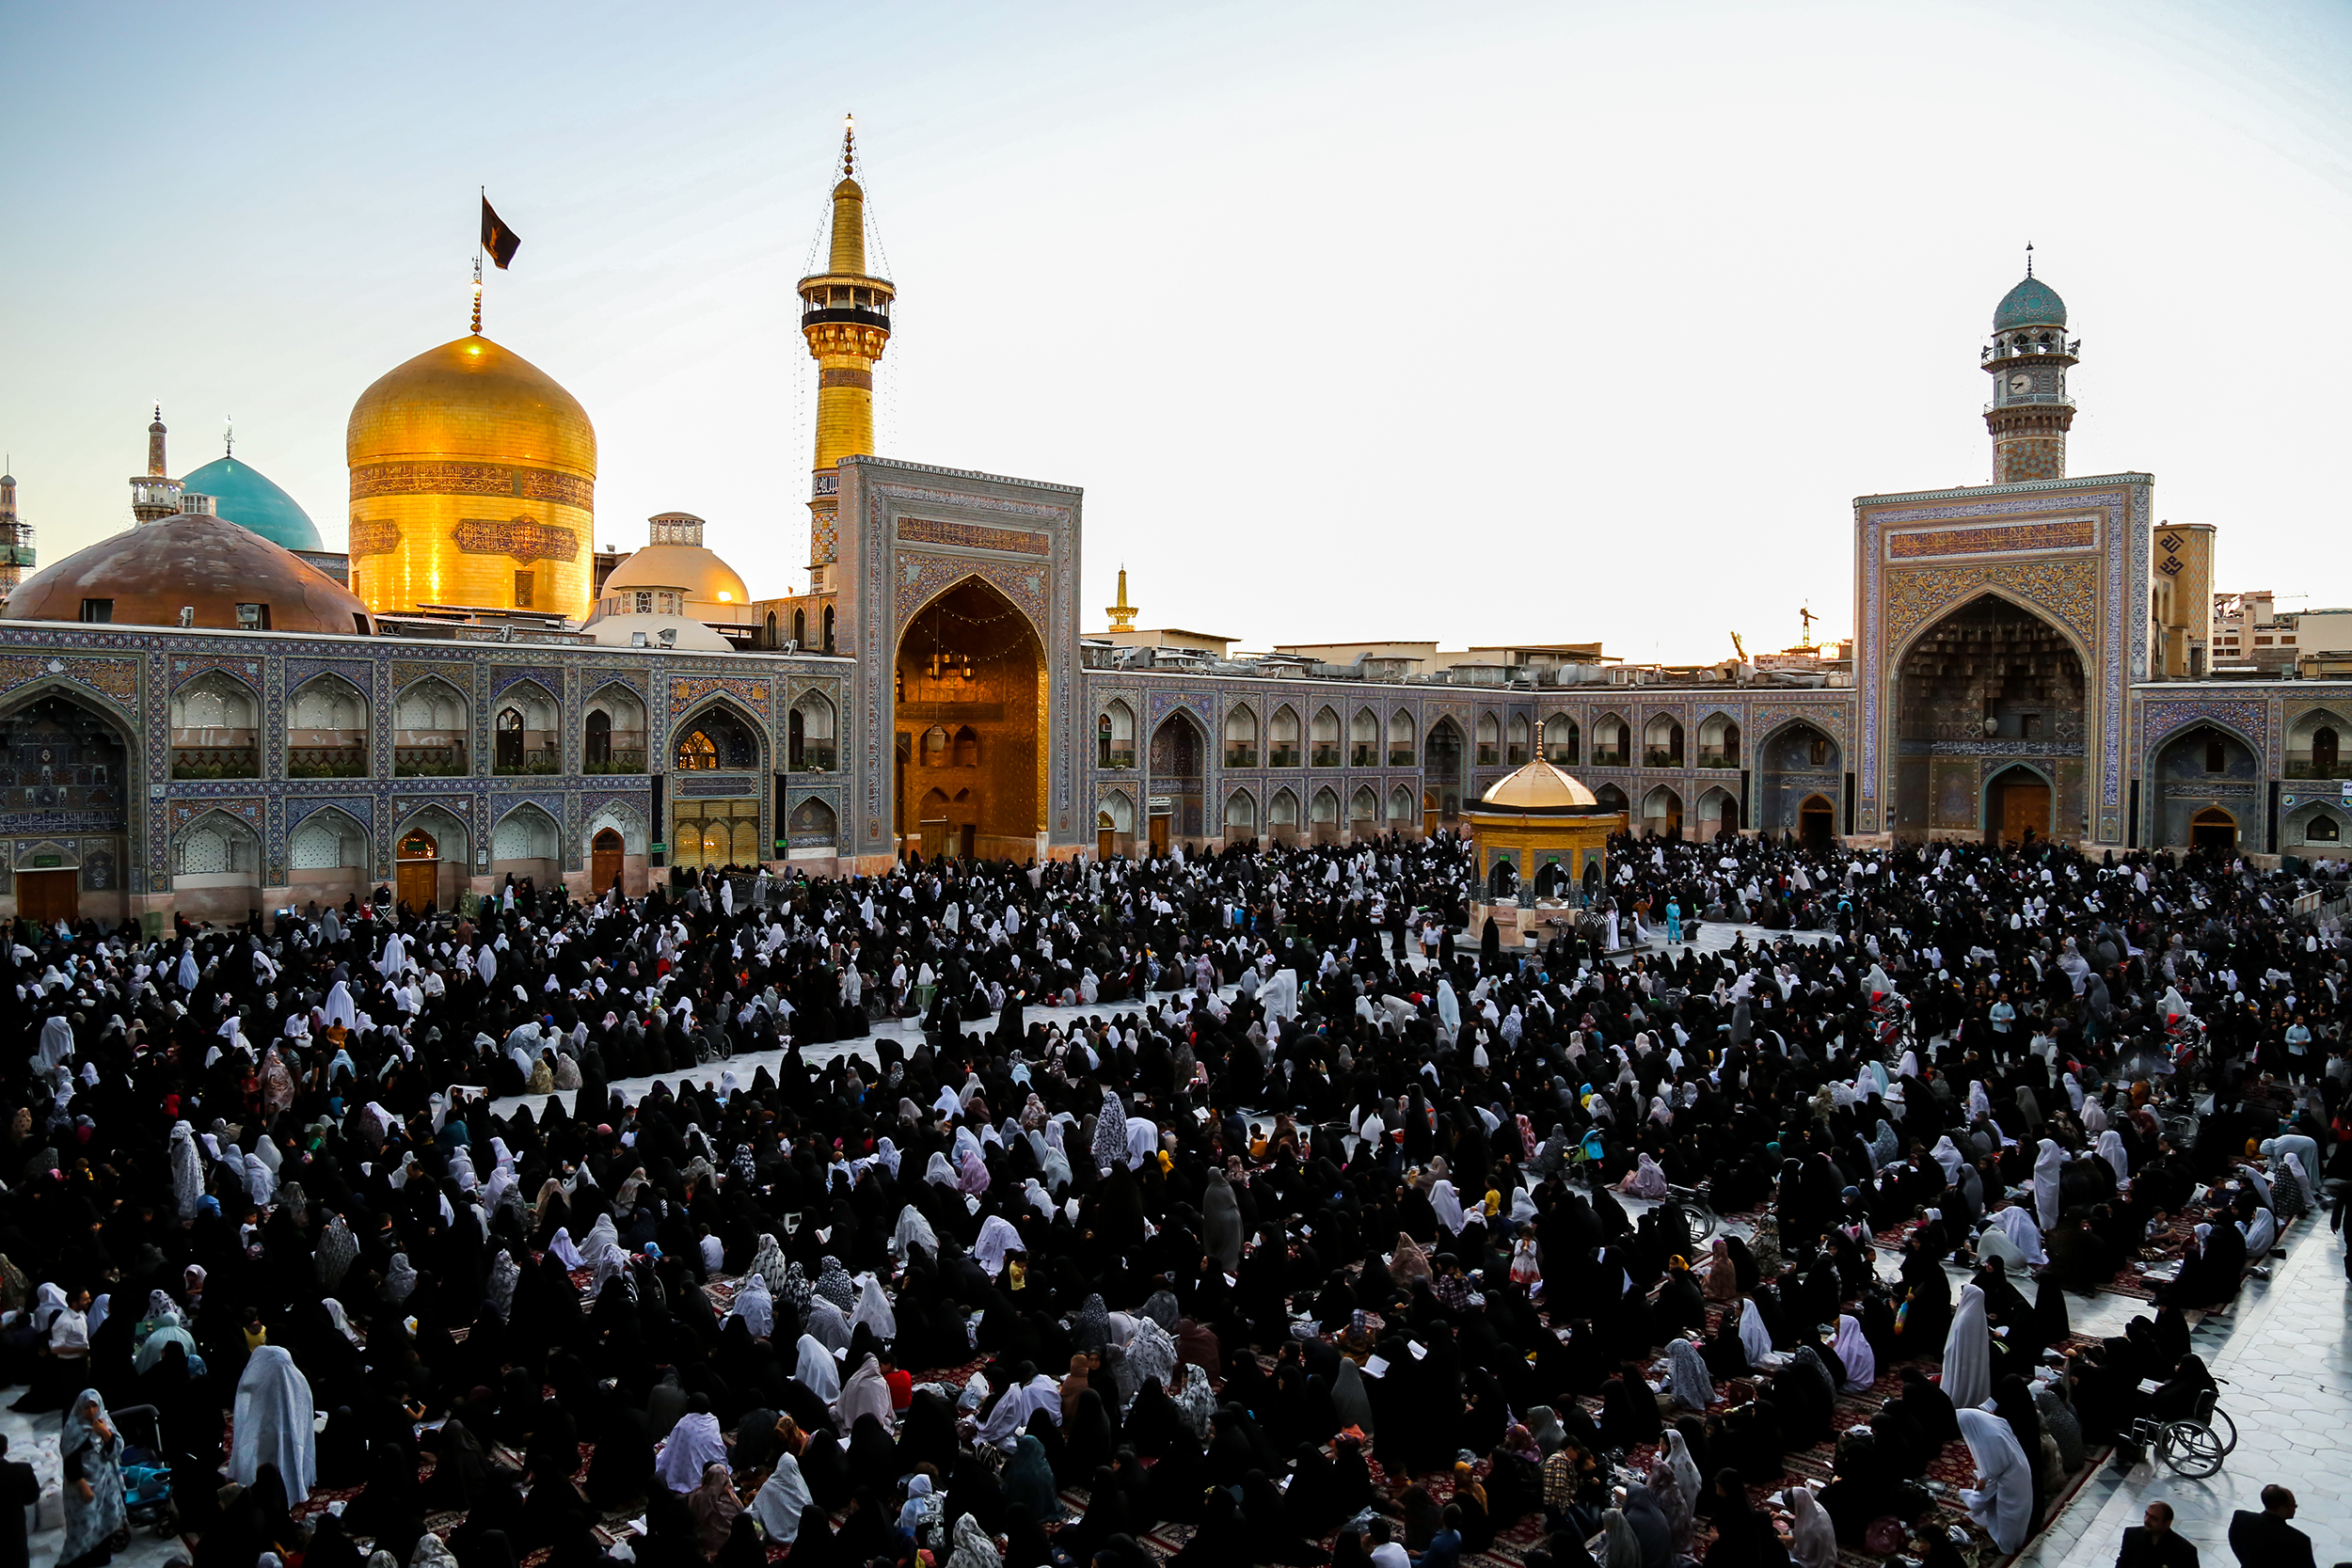 The Holy Shrine of Imam Reza at Mashhad is the largest Shi